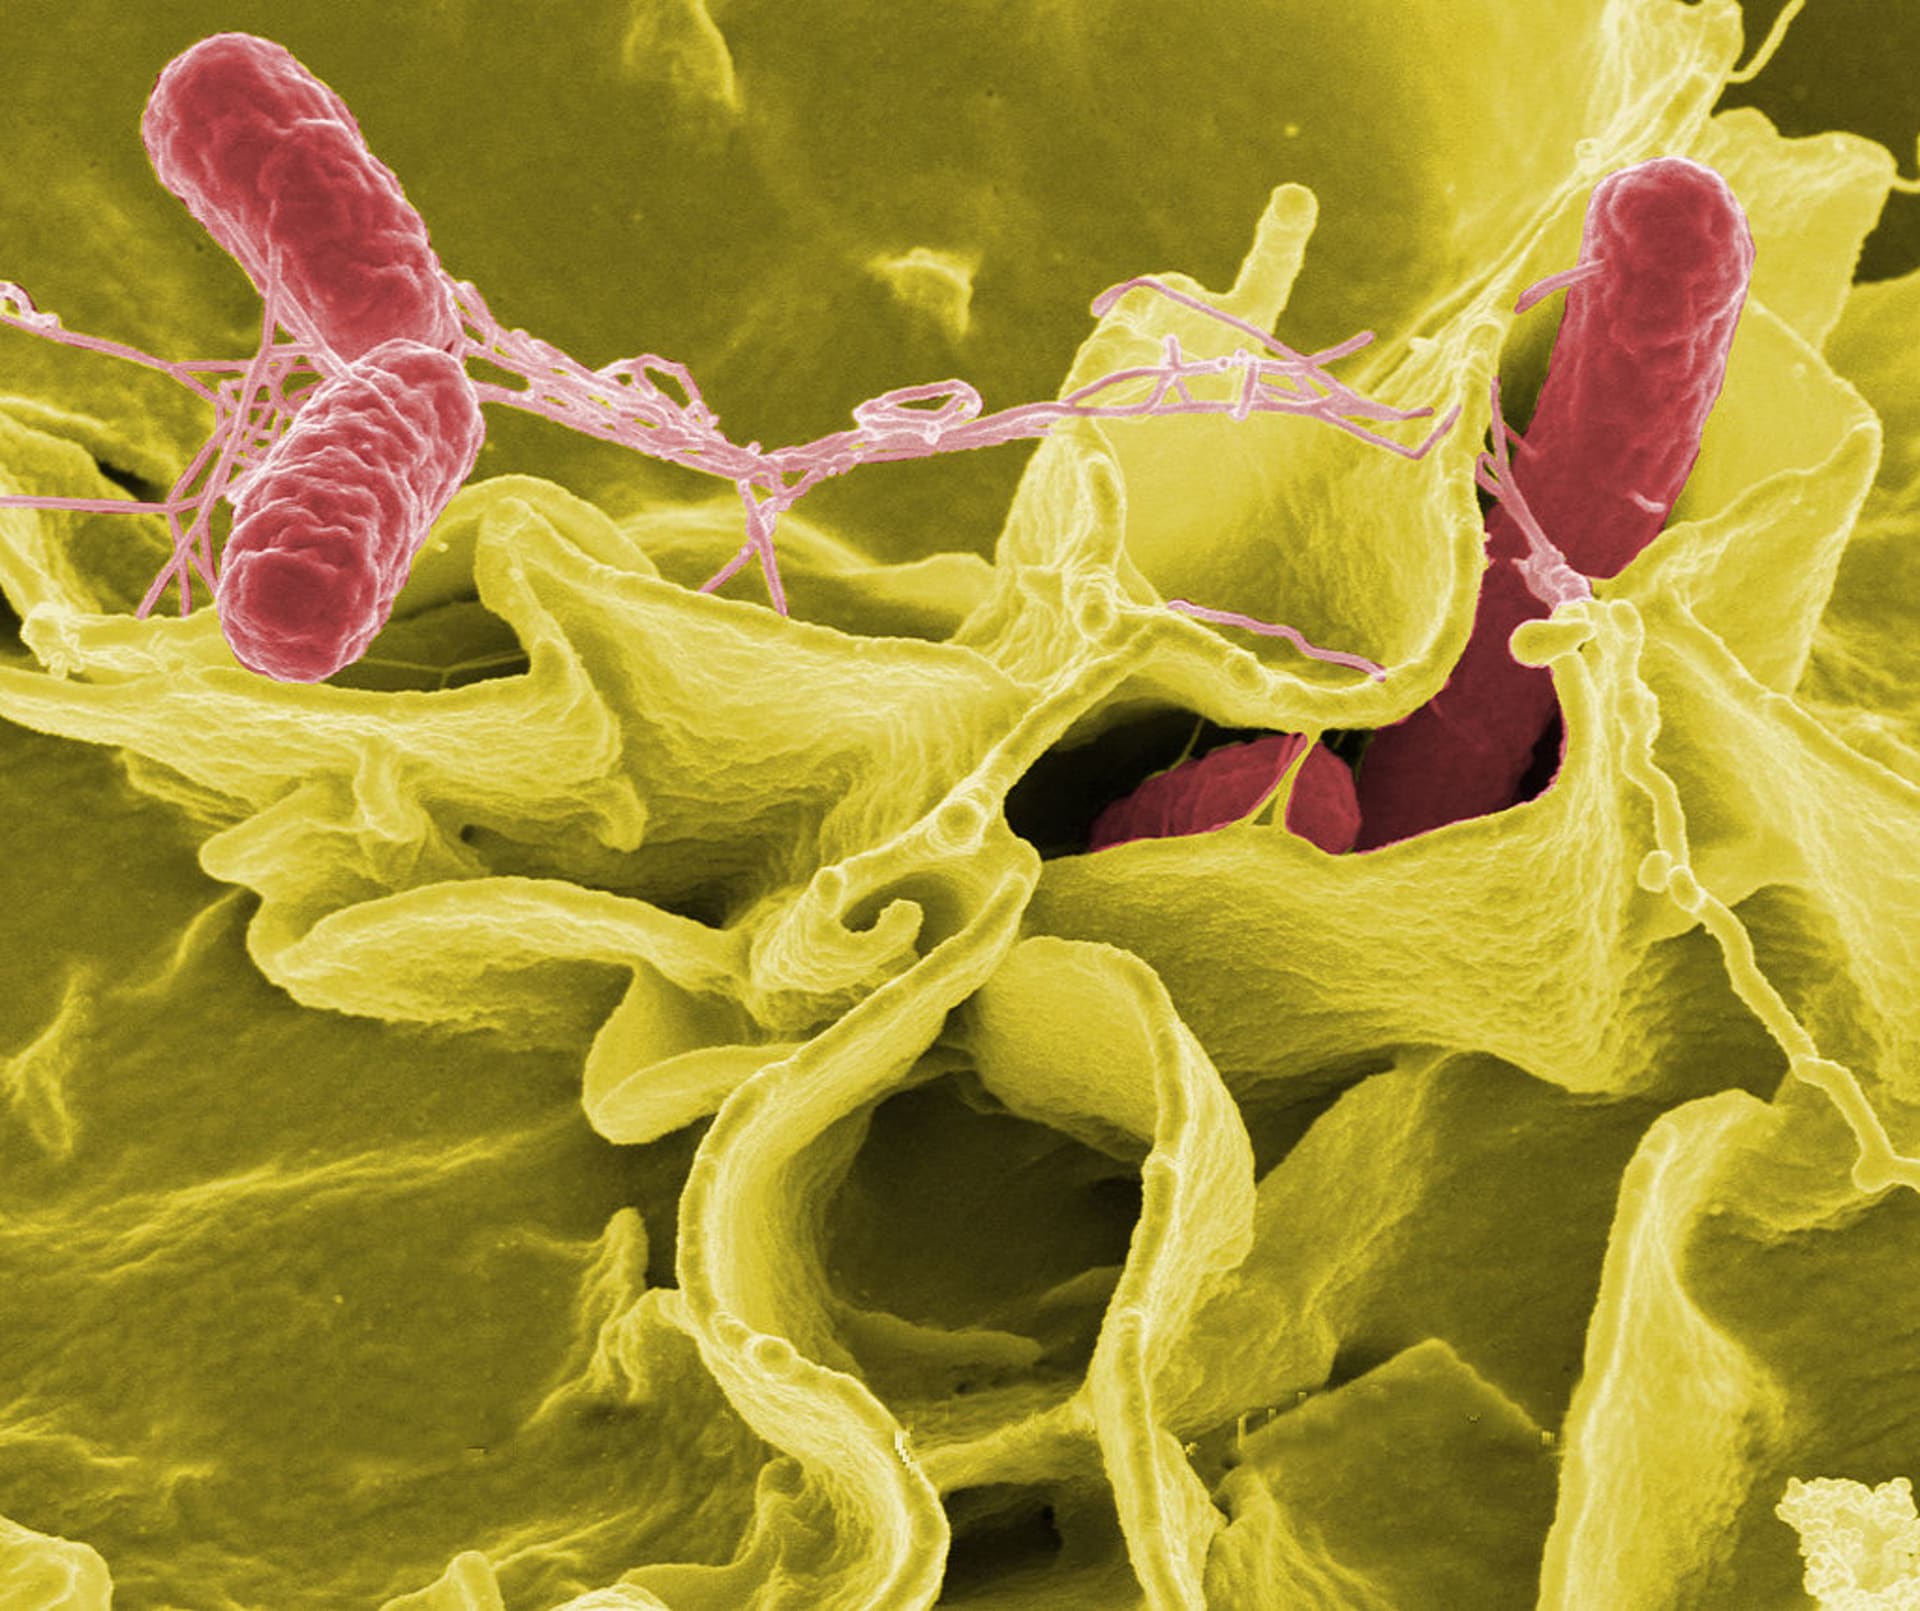 Bakterie Salmonella typhimurium (červeně) pod elektronovým mikroskopem